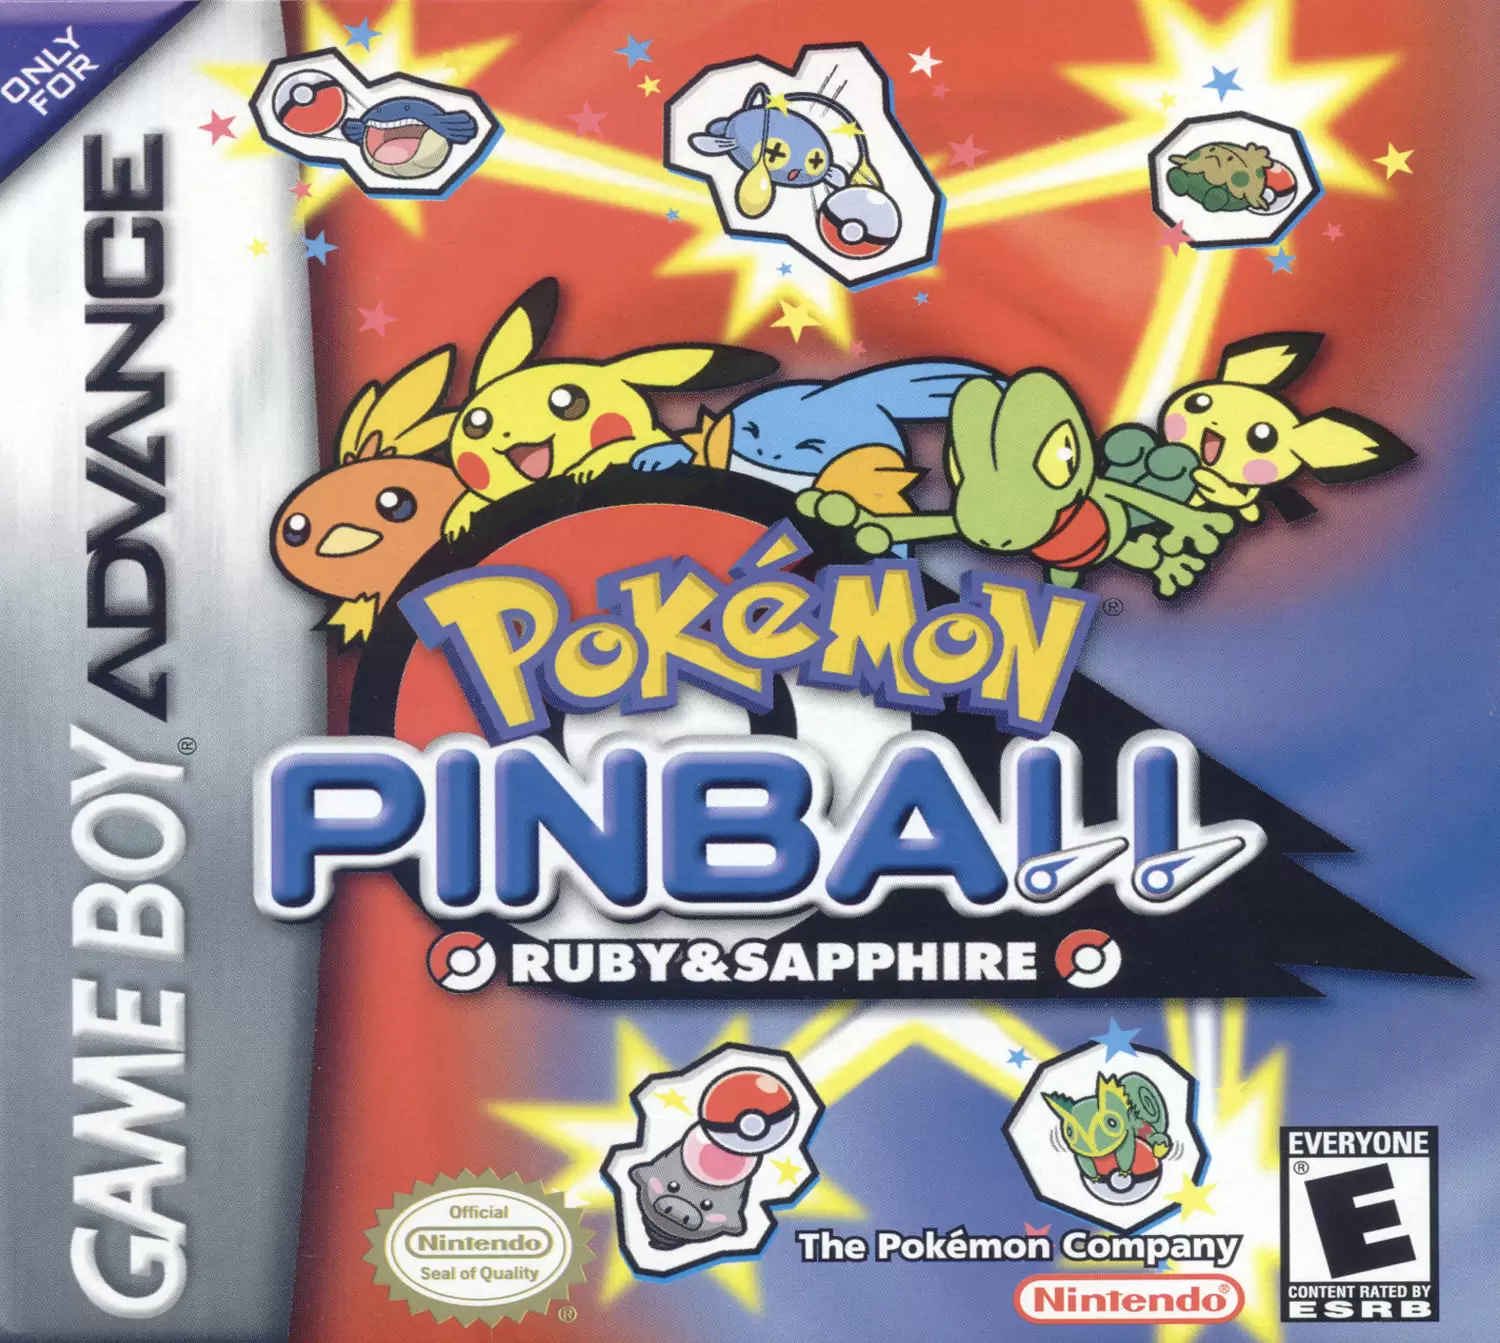 Game Boy Advance Games - Pokémon Pinball Ruby & Sapphire